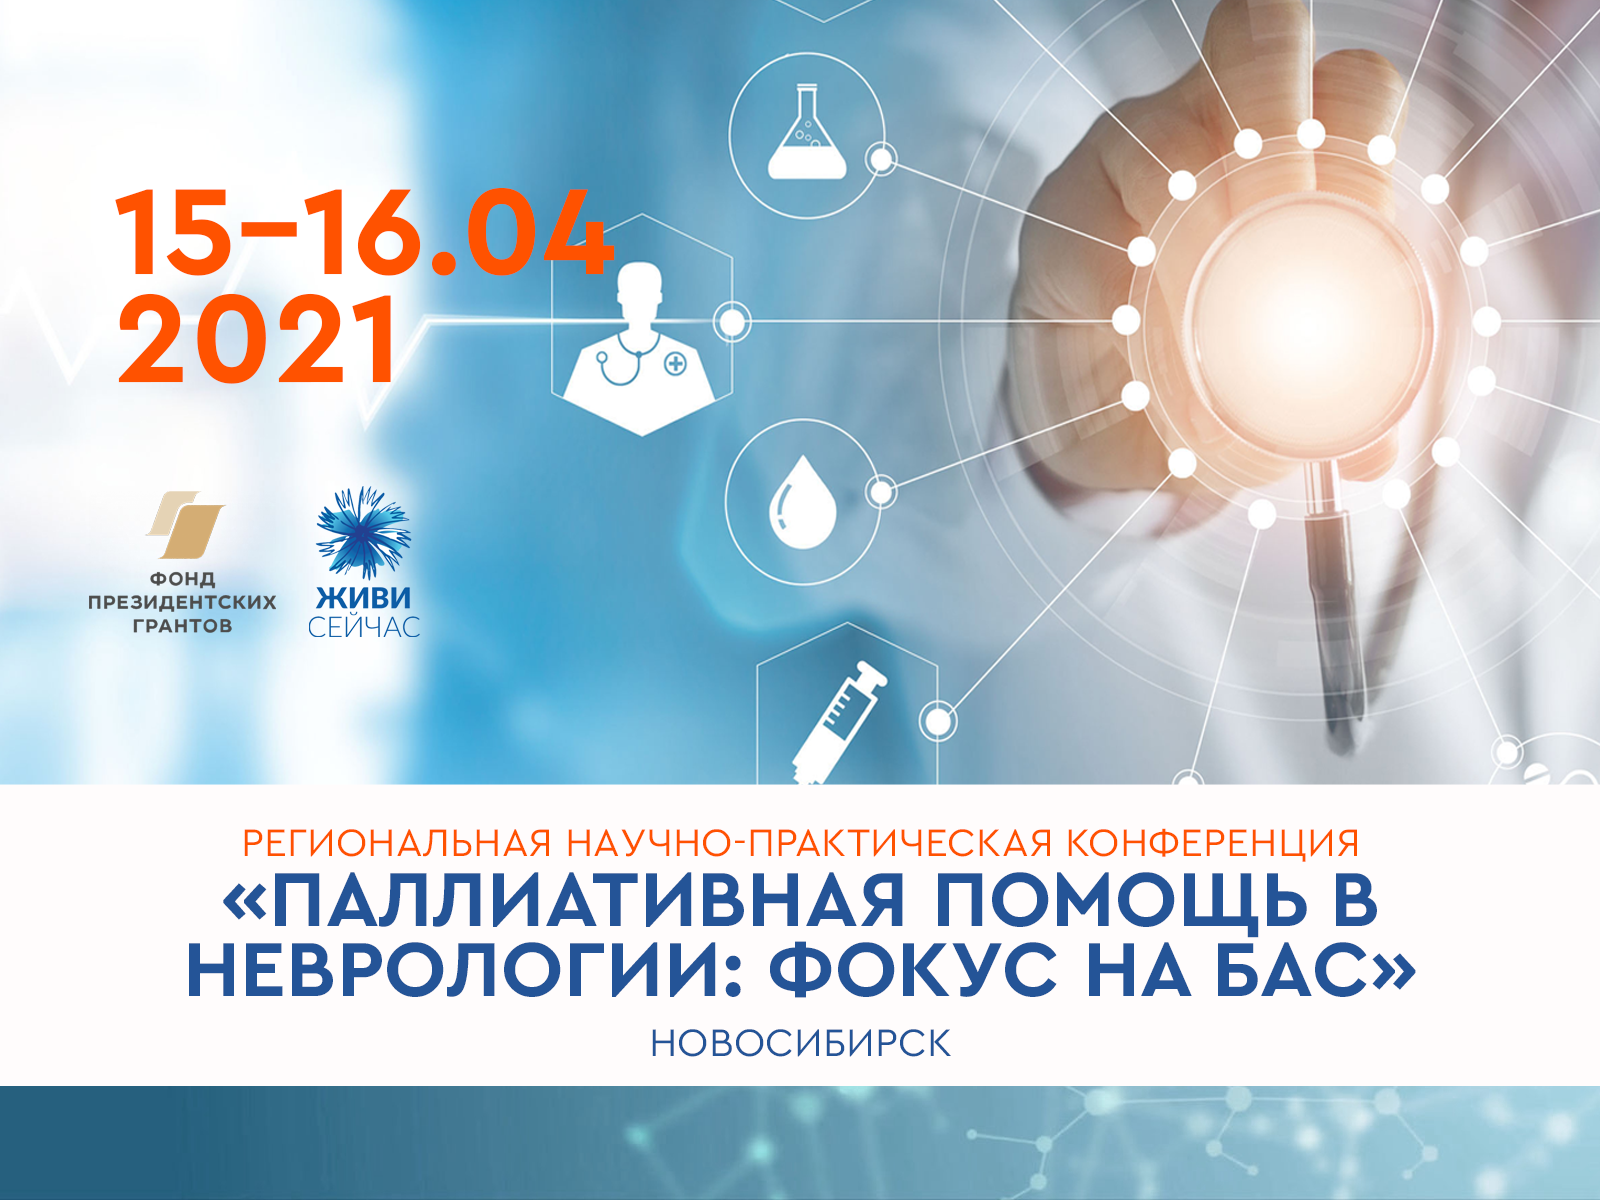 Открыта регистрация на научно-практическую конференцию по БАС в Новосибирске